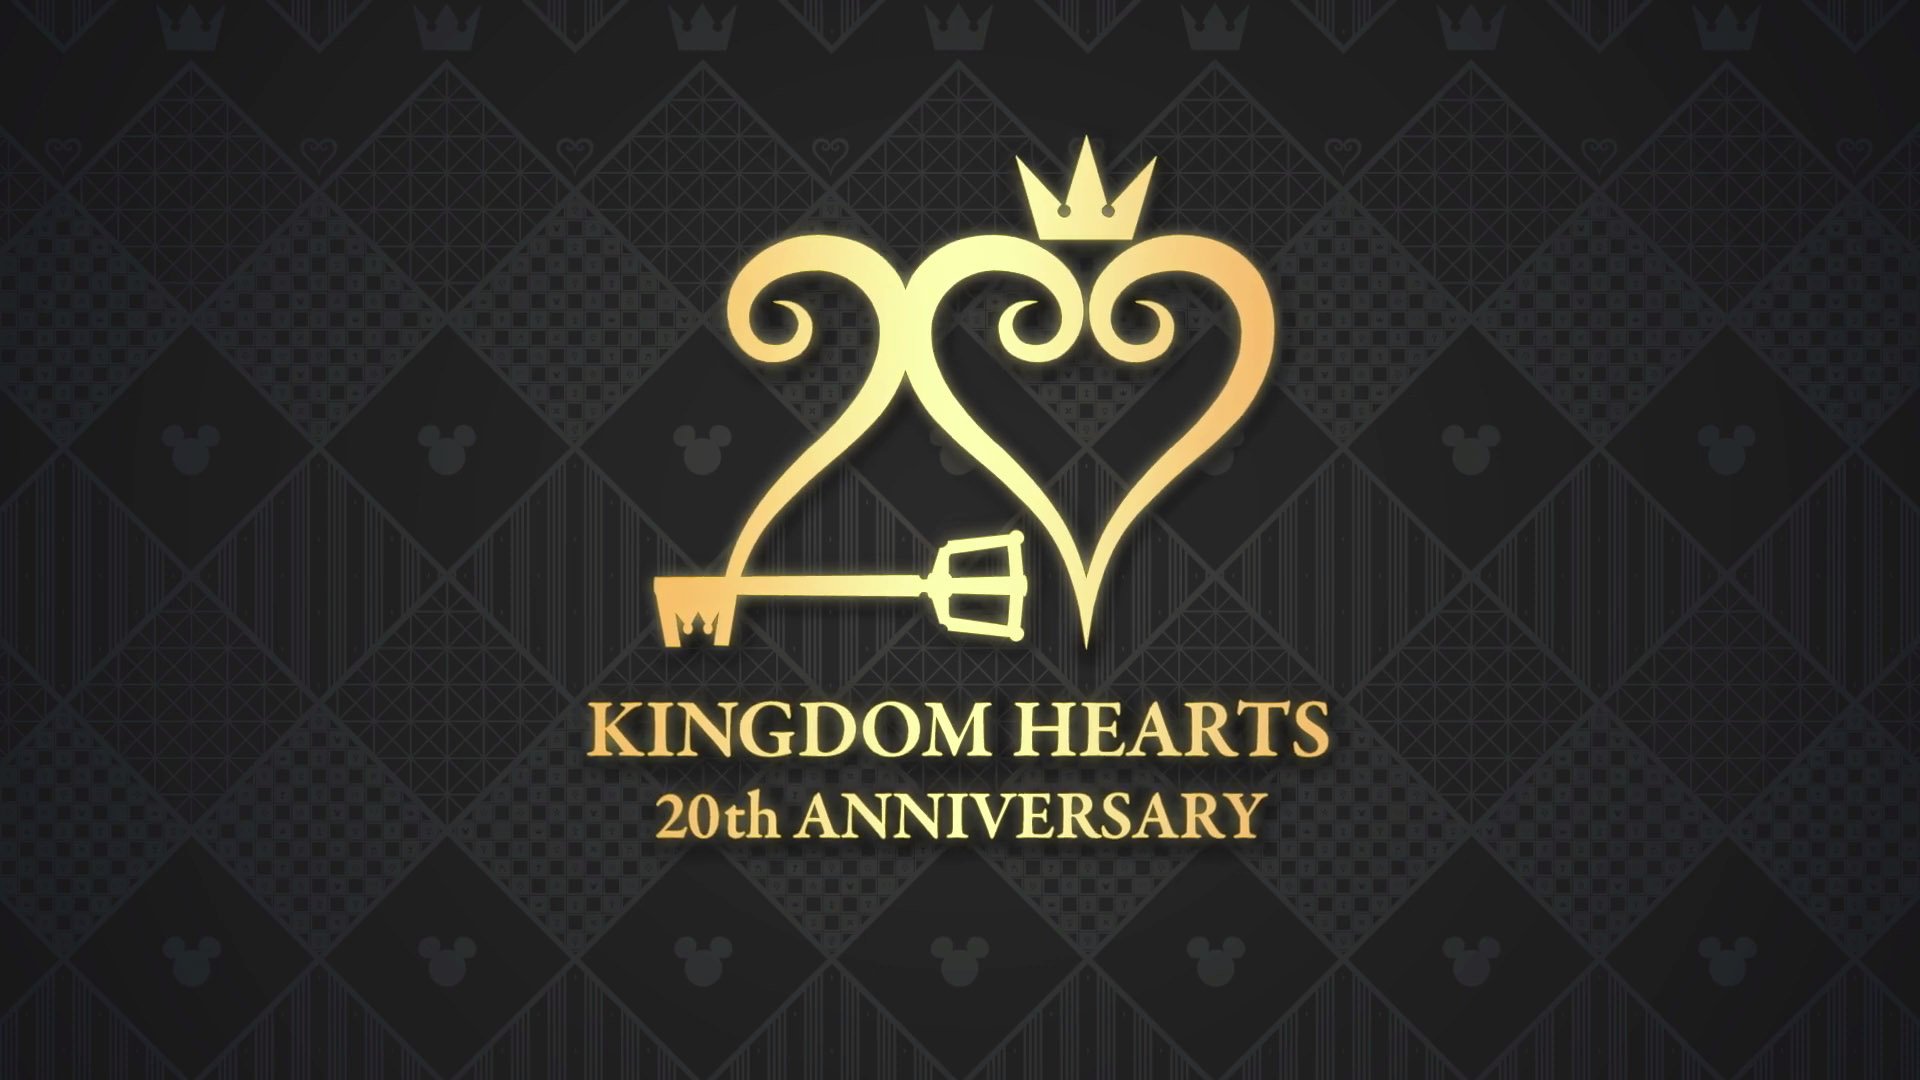 Kingdom Hearts 20th anniversary trailer reveals event, more – Gematsu